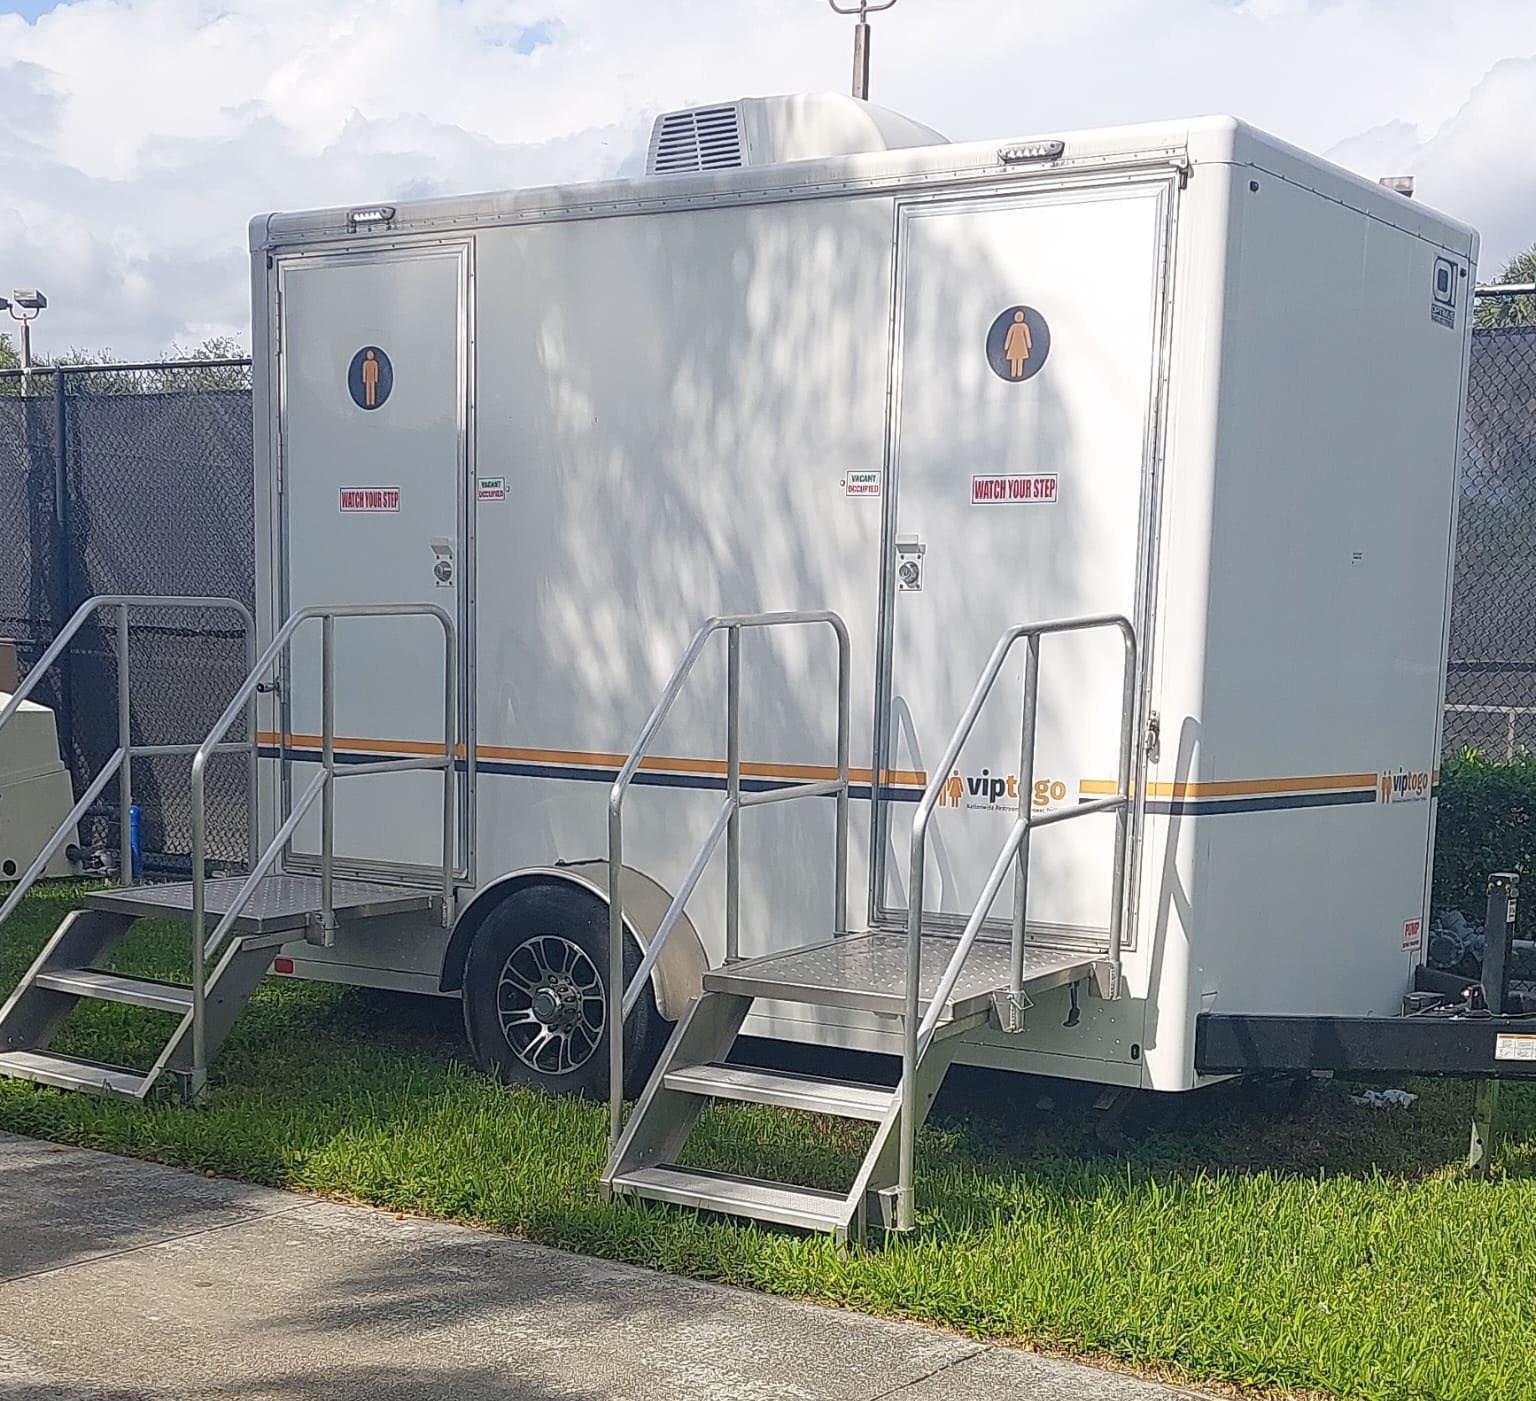 restroom trailer rental parked on grass